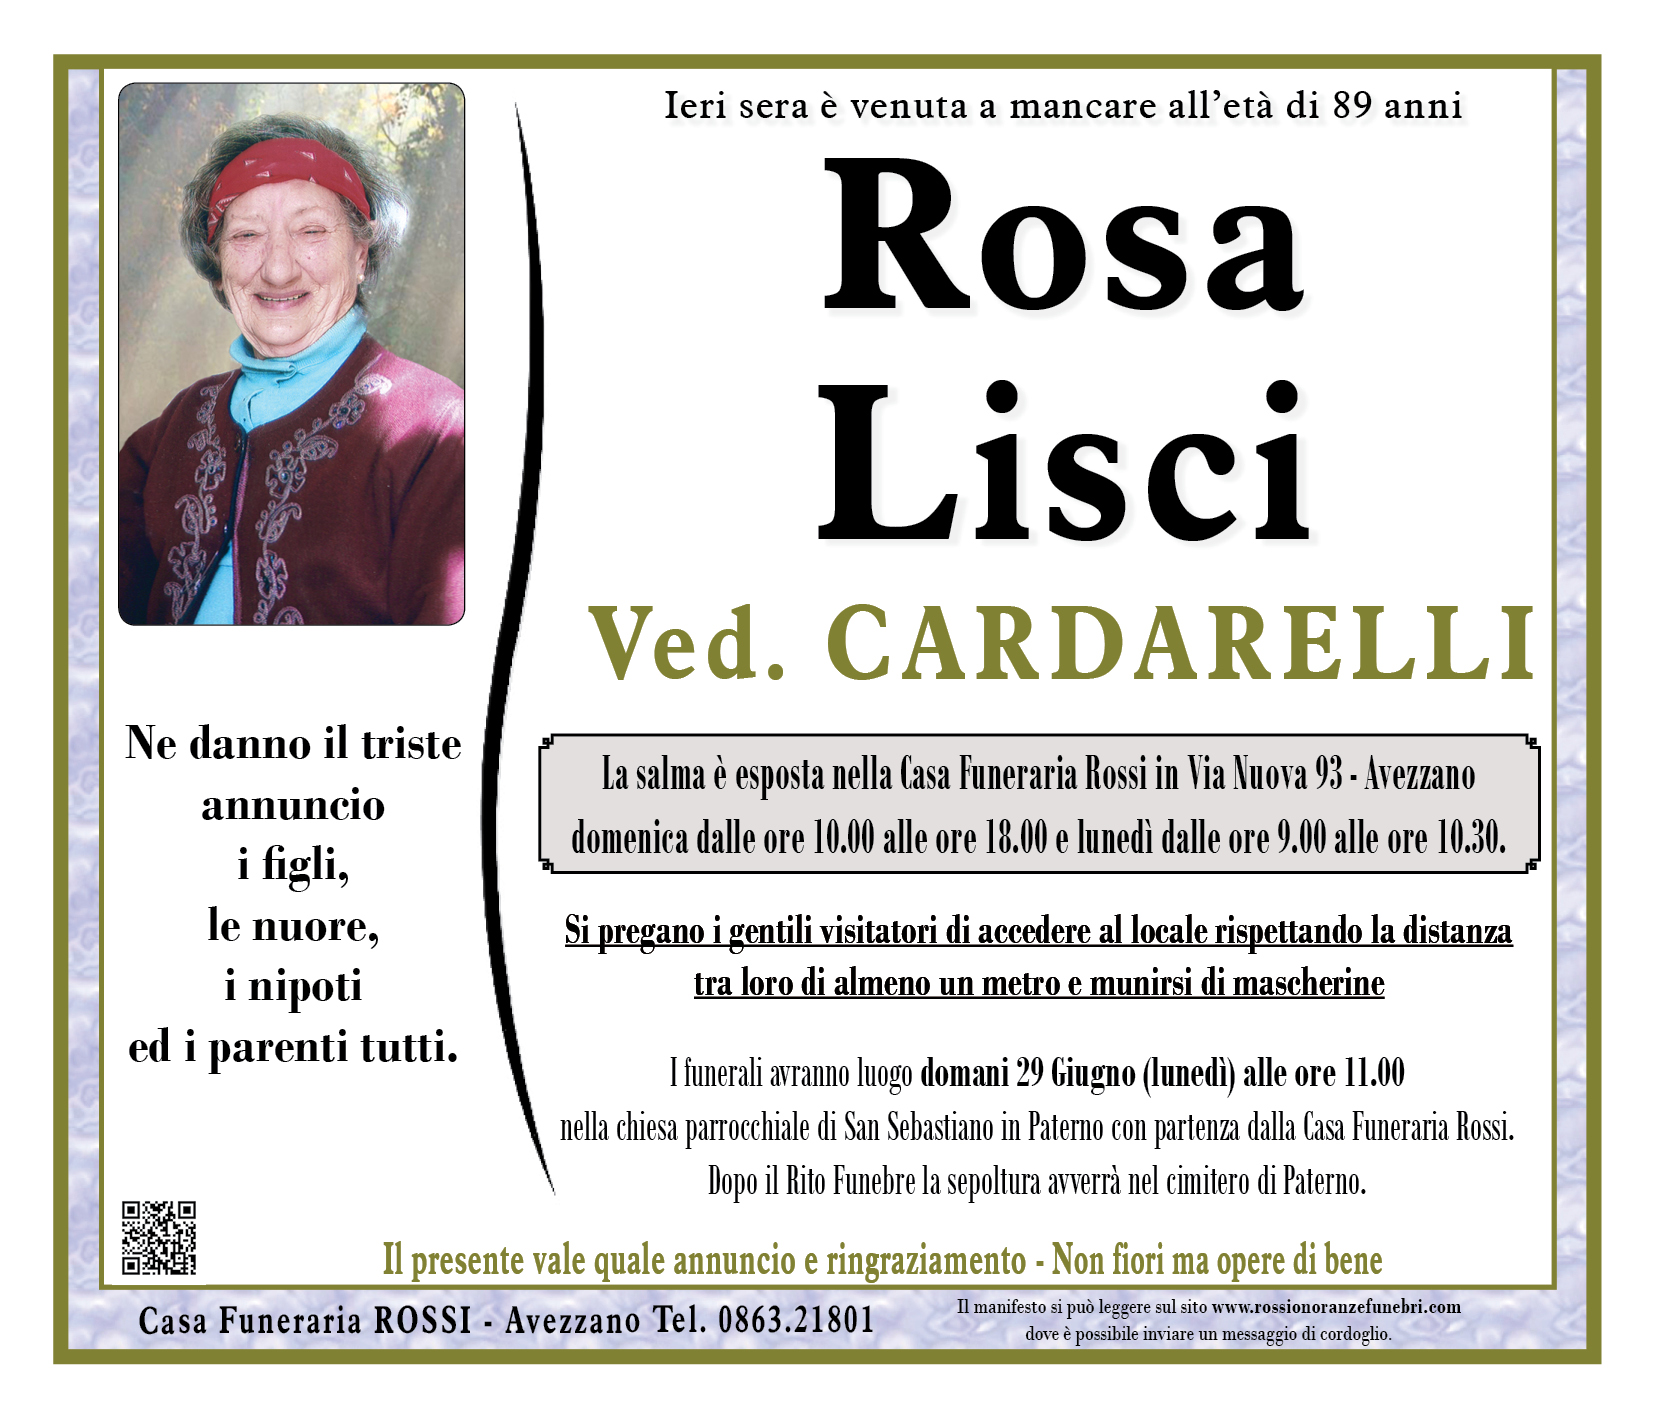 Rosa Lisci